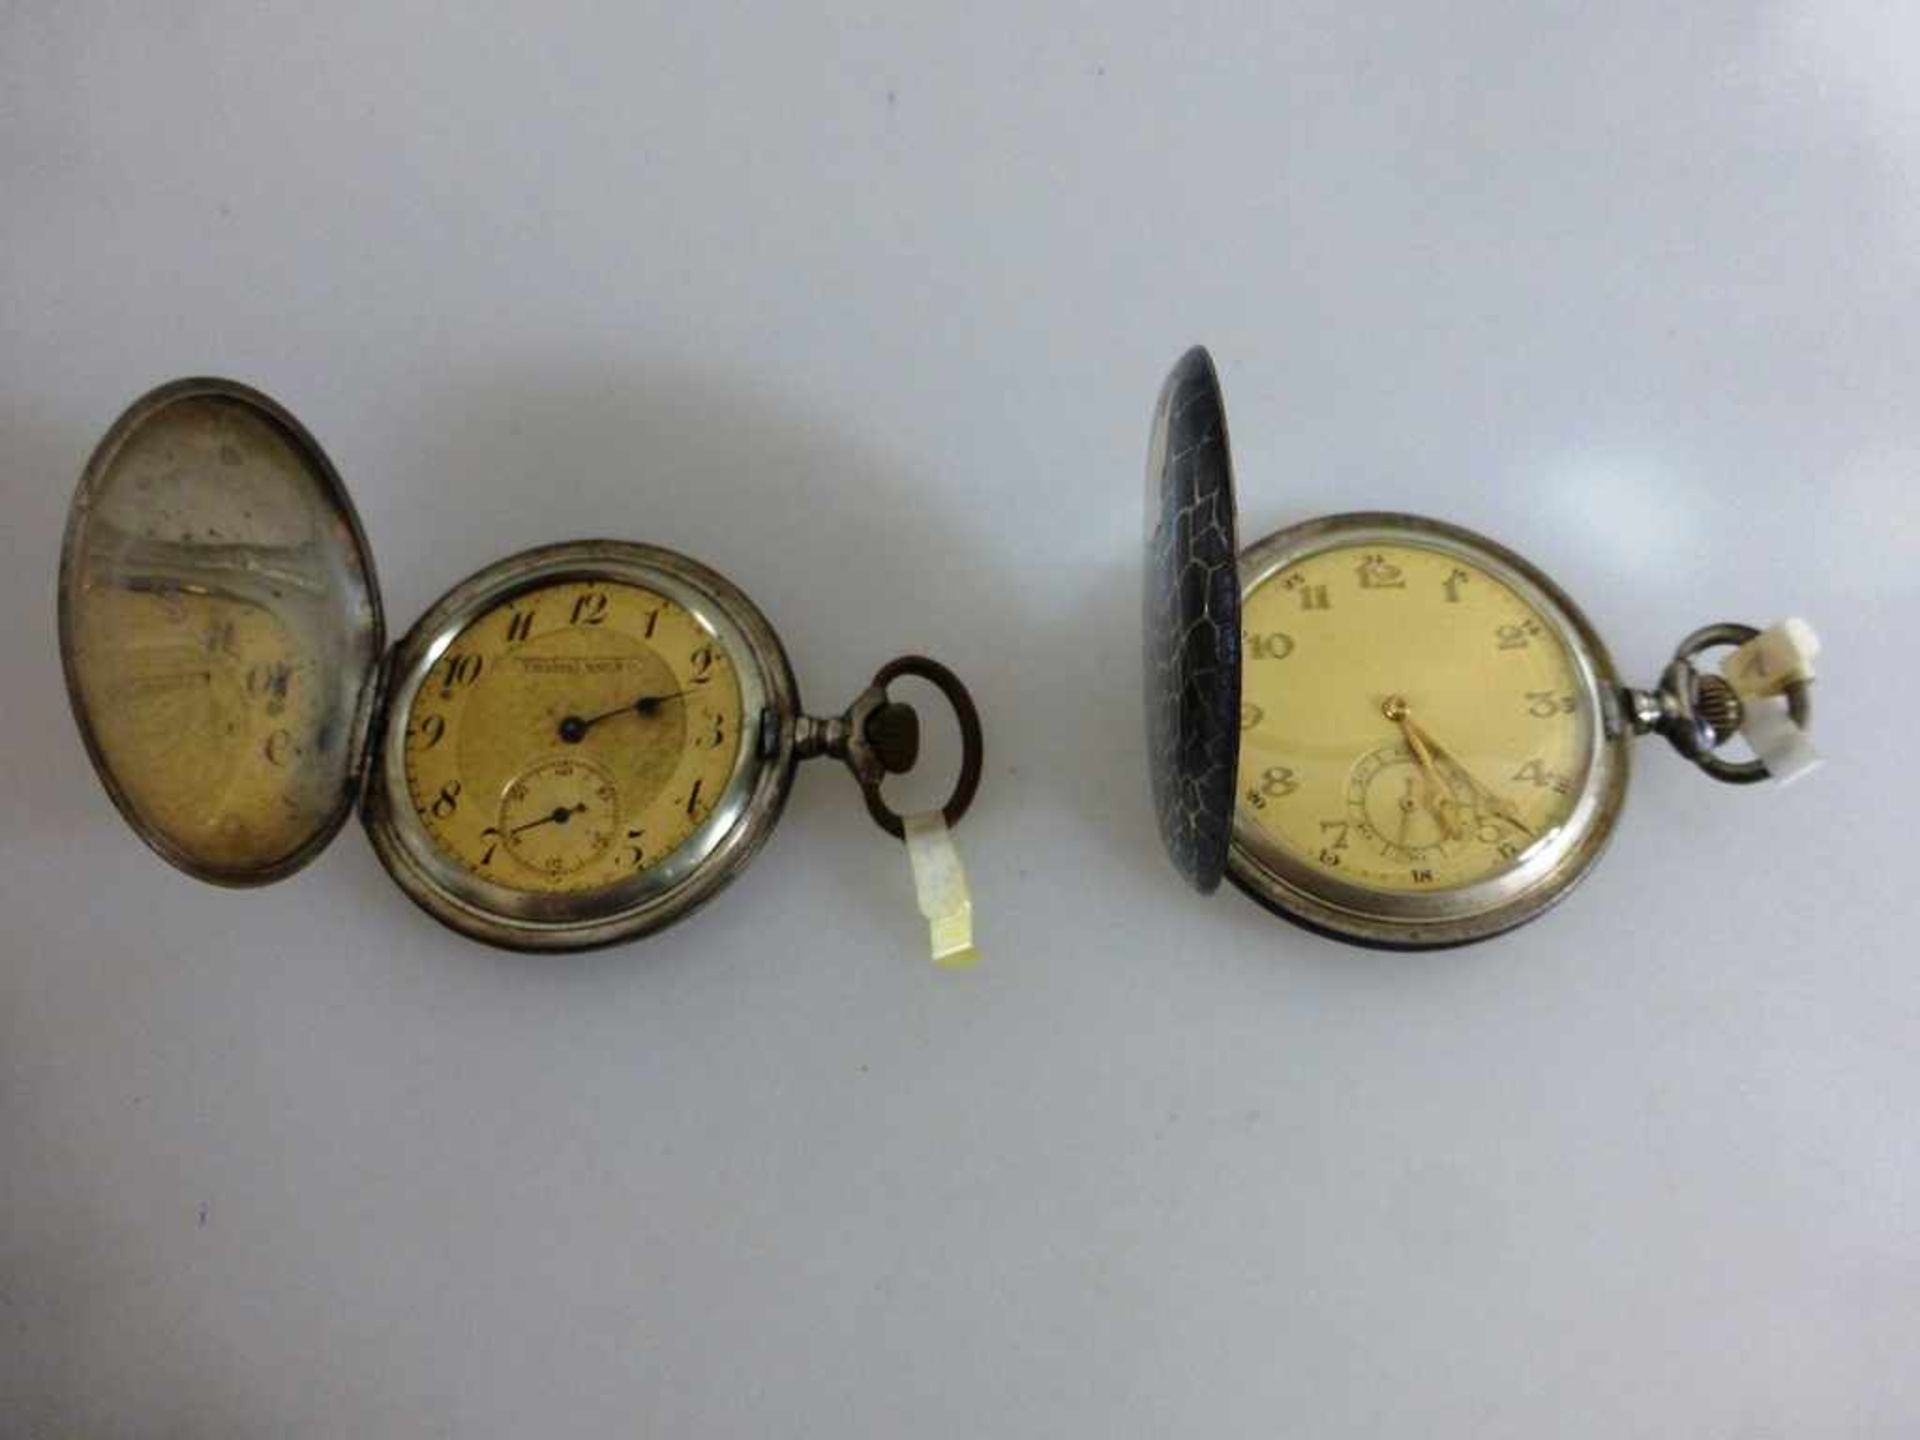 2 Taschenuhren, Tulasilber, 1x bez. Tavannes Watch & Co., Ankerhemmung, Glas fehlt, defektund - Bild 2 aus 2